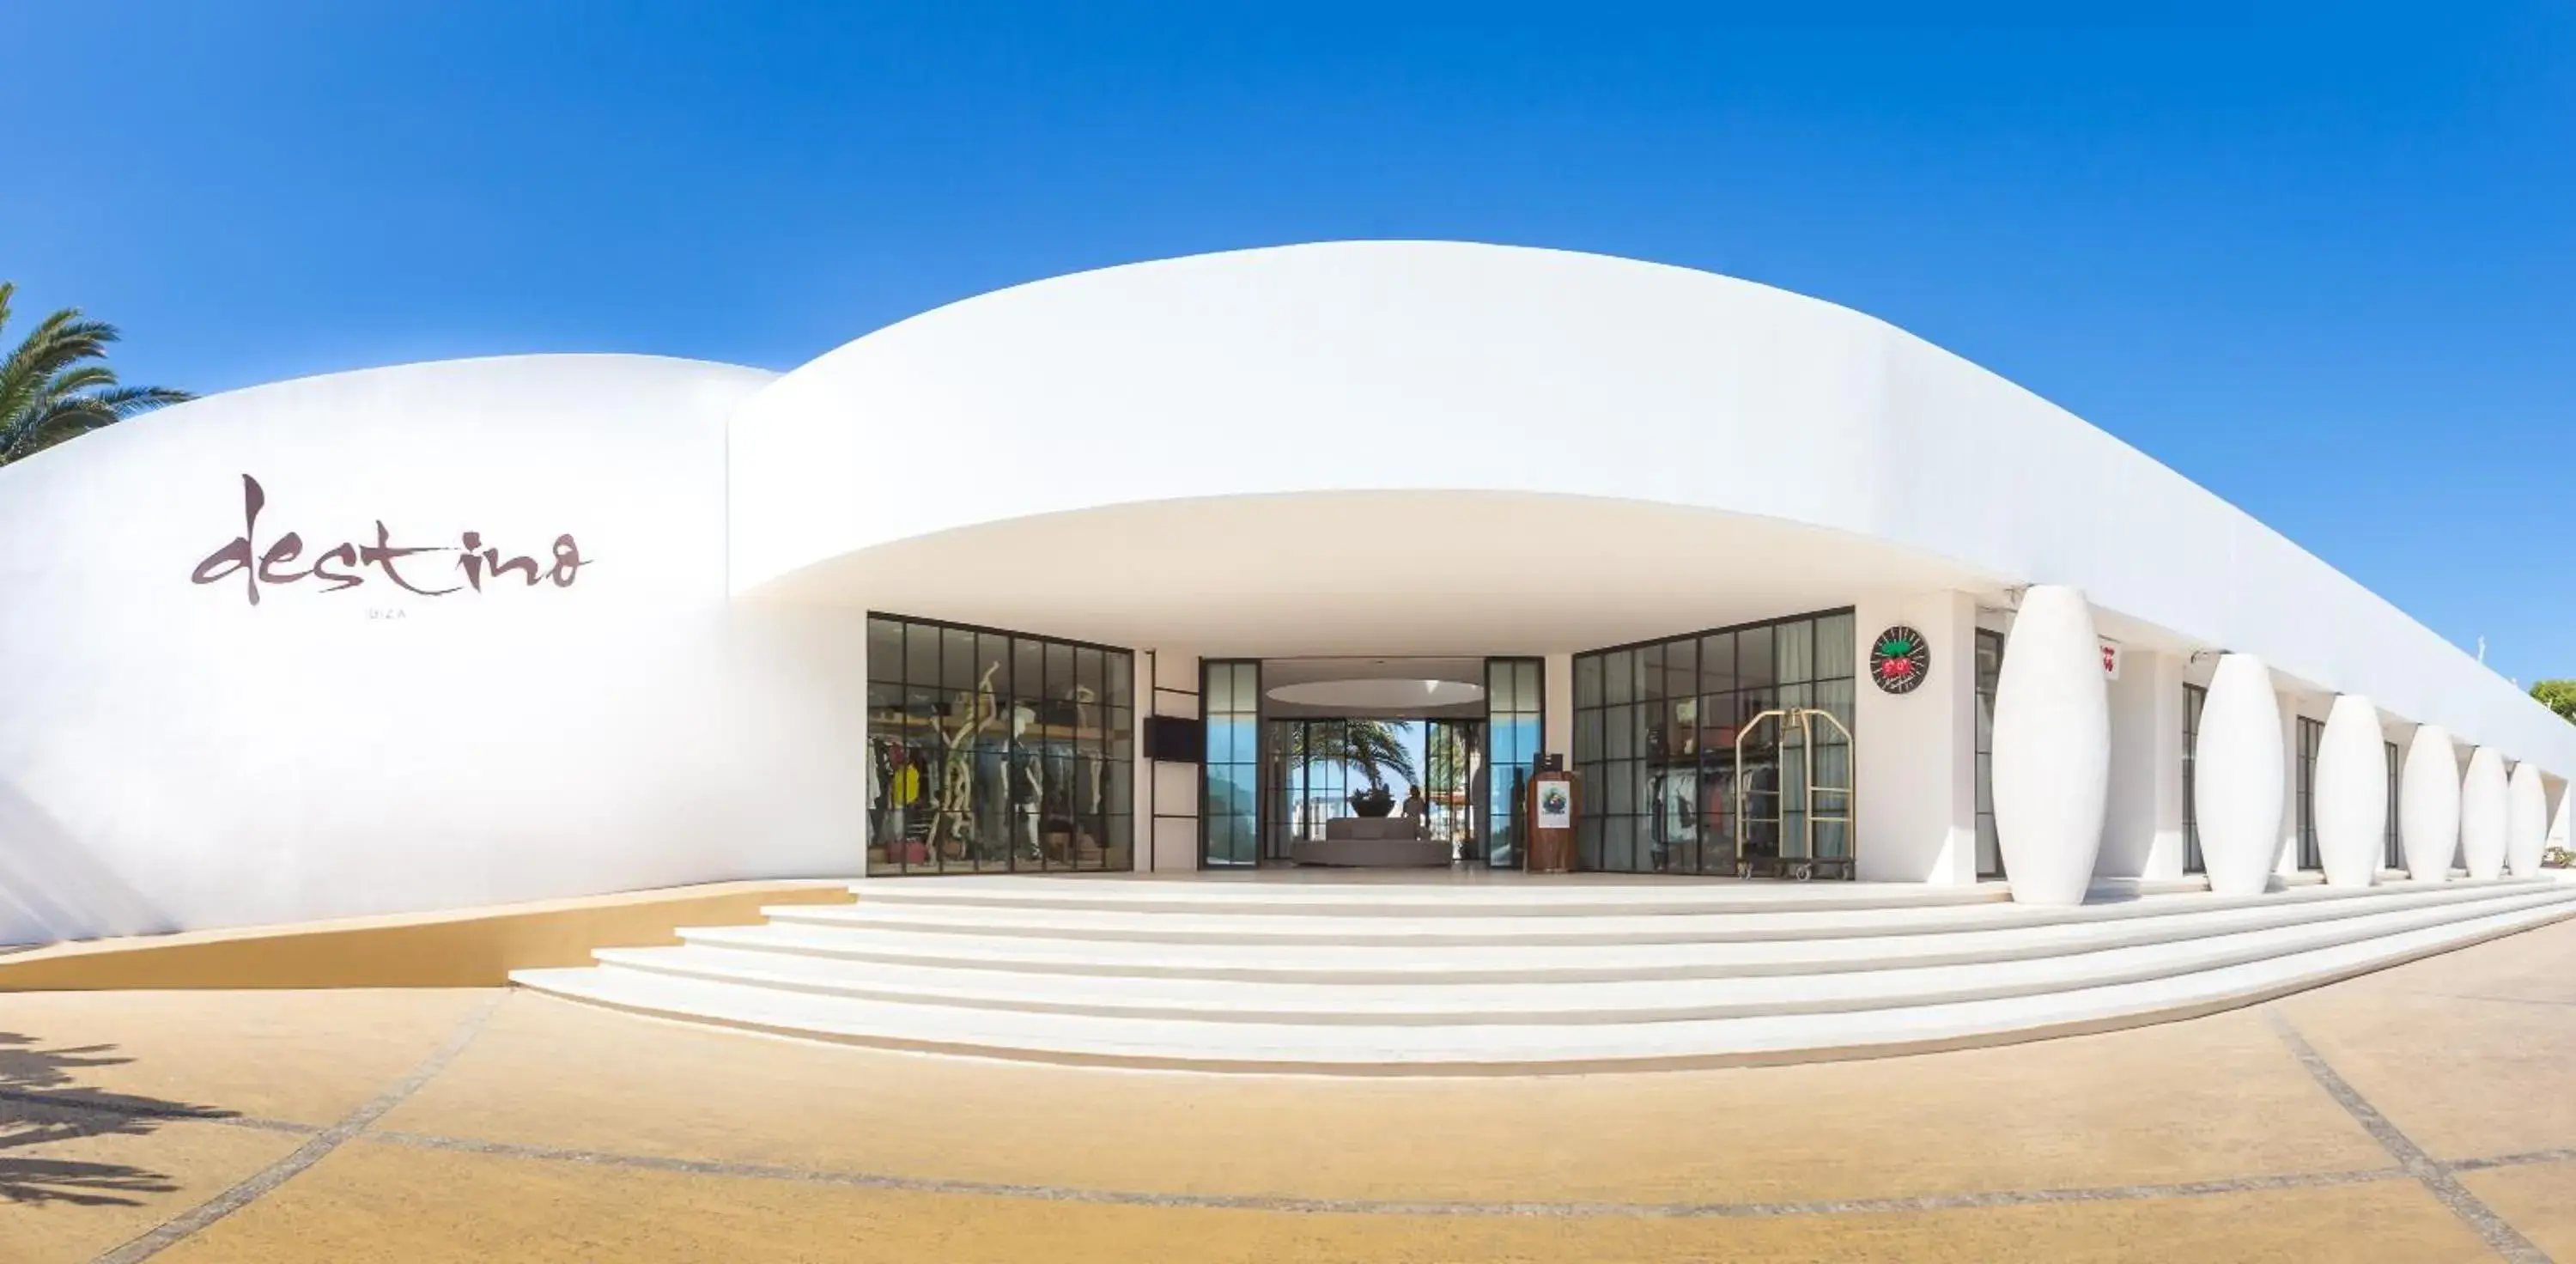 Facade/entrance in Destino Pacha Ibiza - Entrance to Pacha Club Included